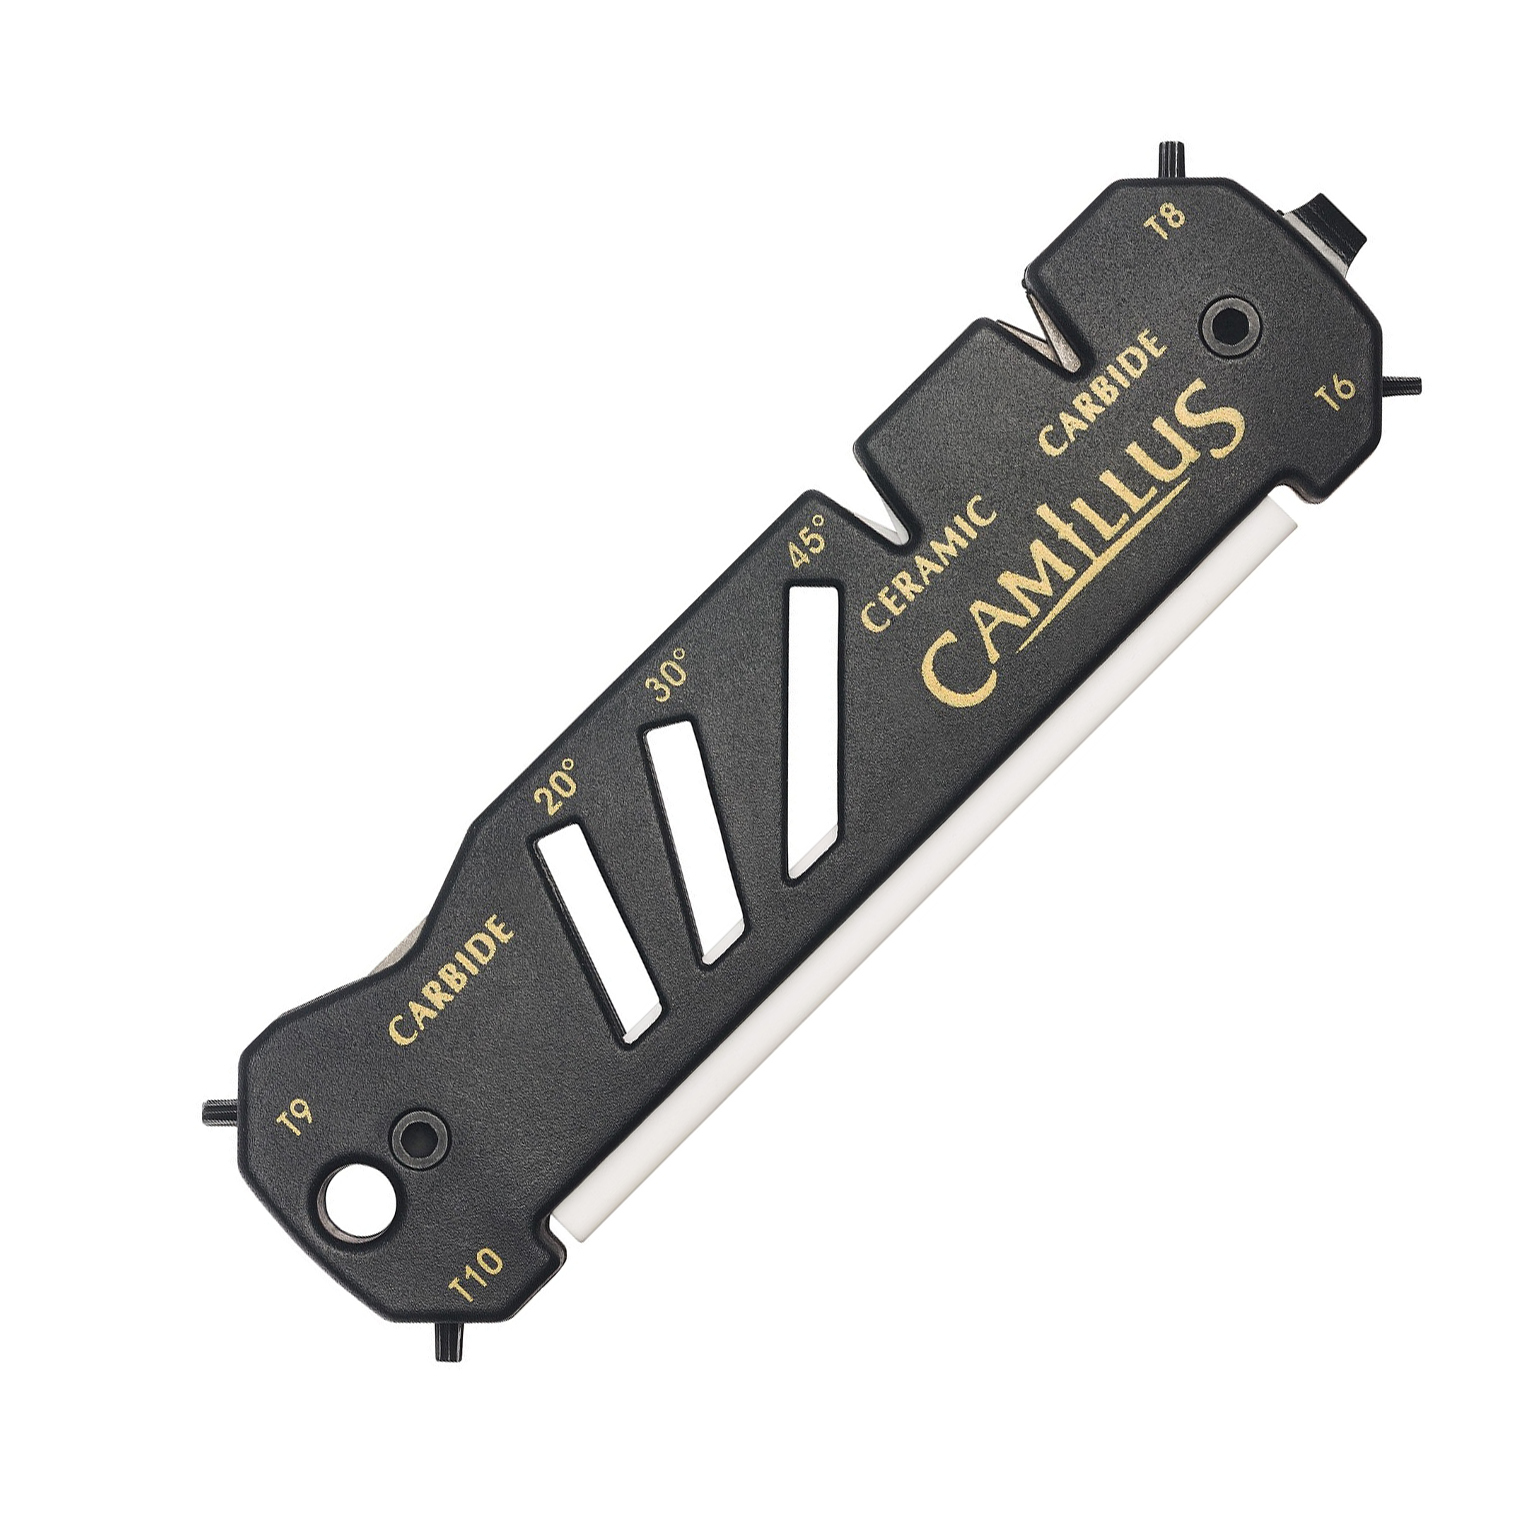 фото Универсальная точилка для ножей, ножниц и рыболовных крючков camillus glide sharpener